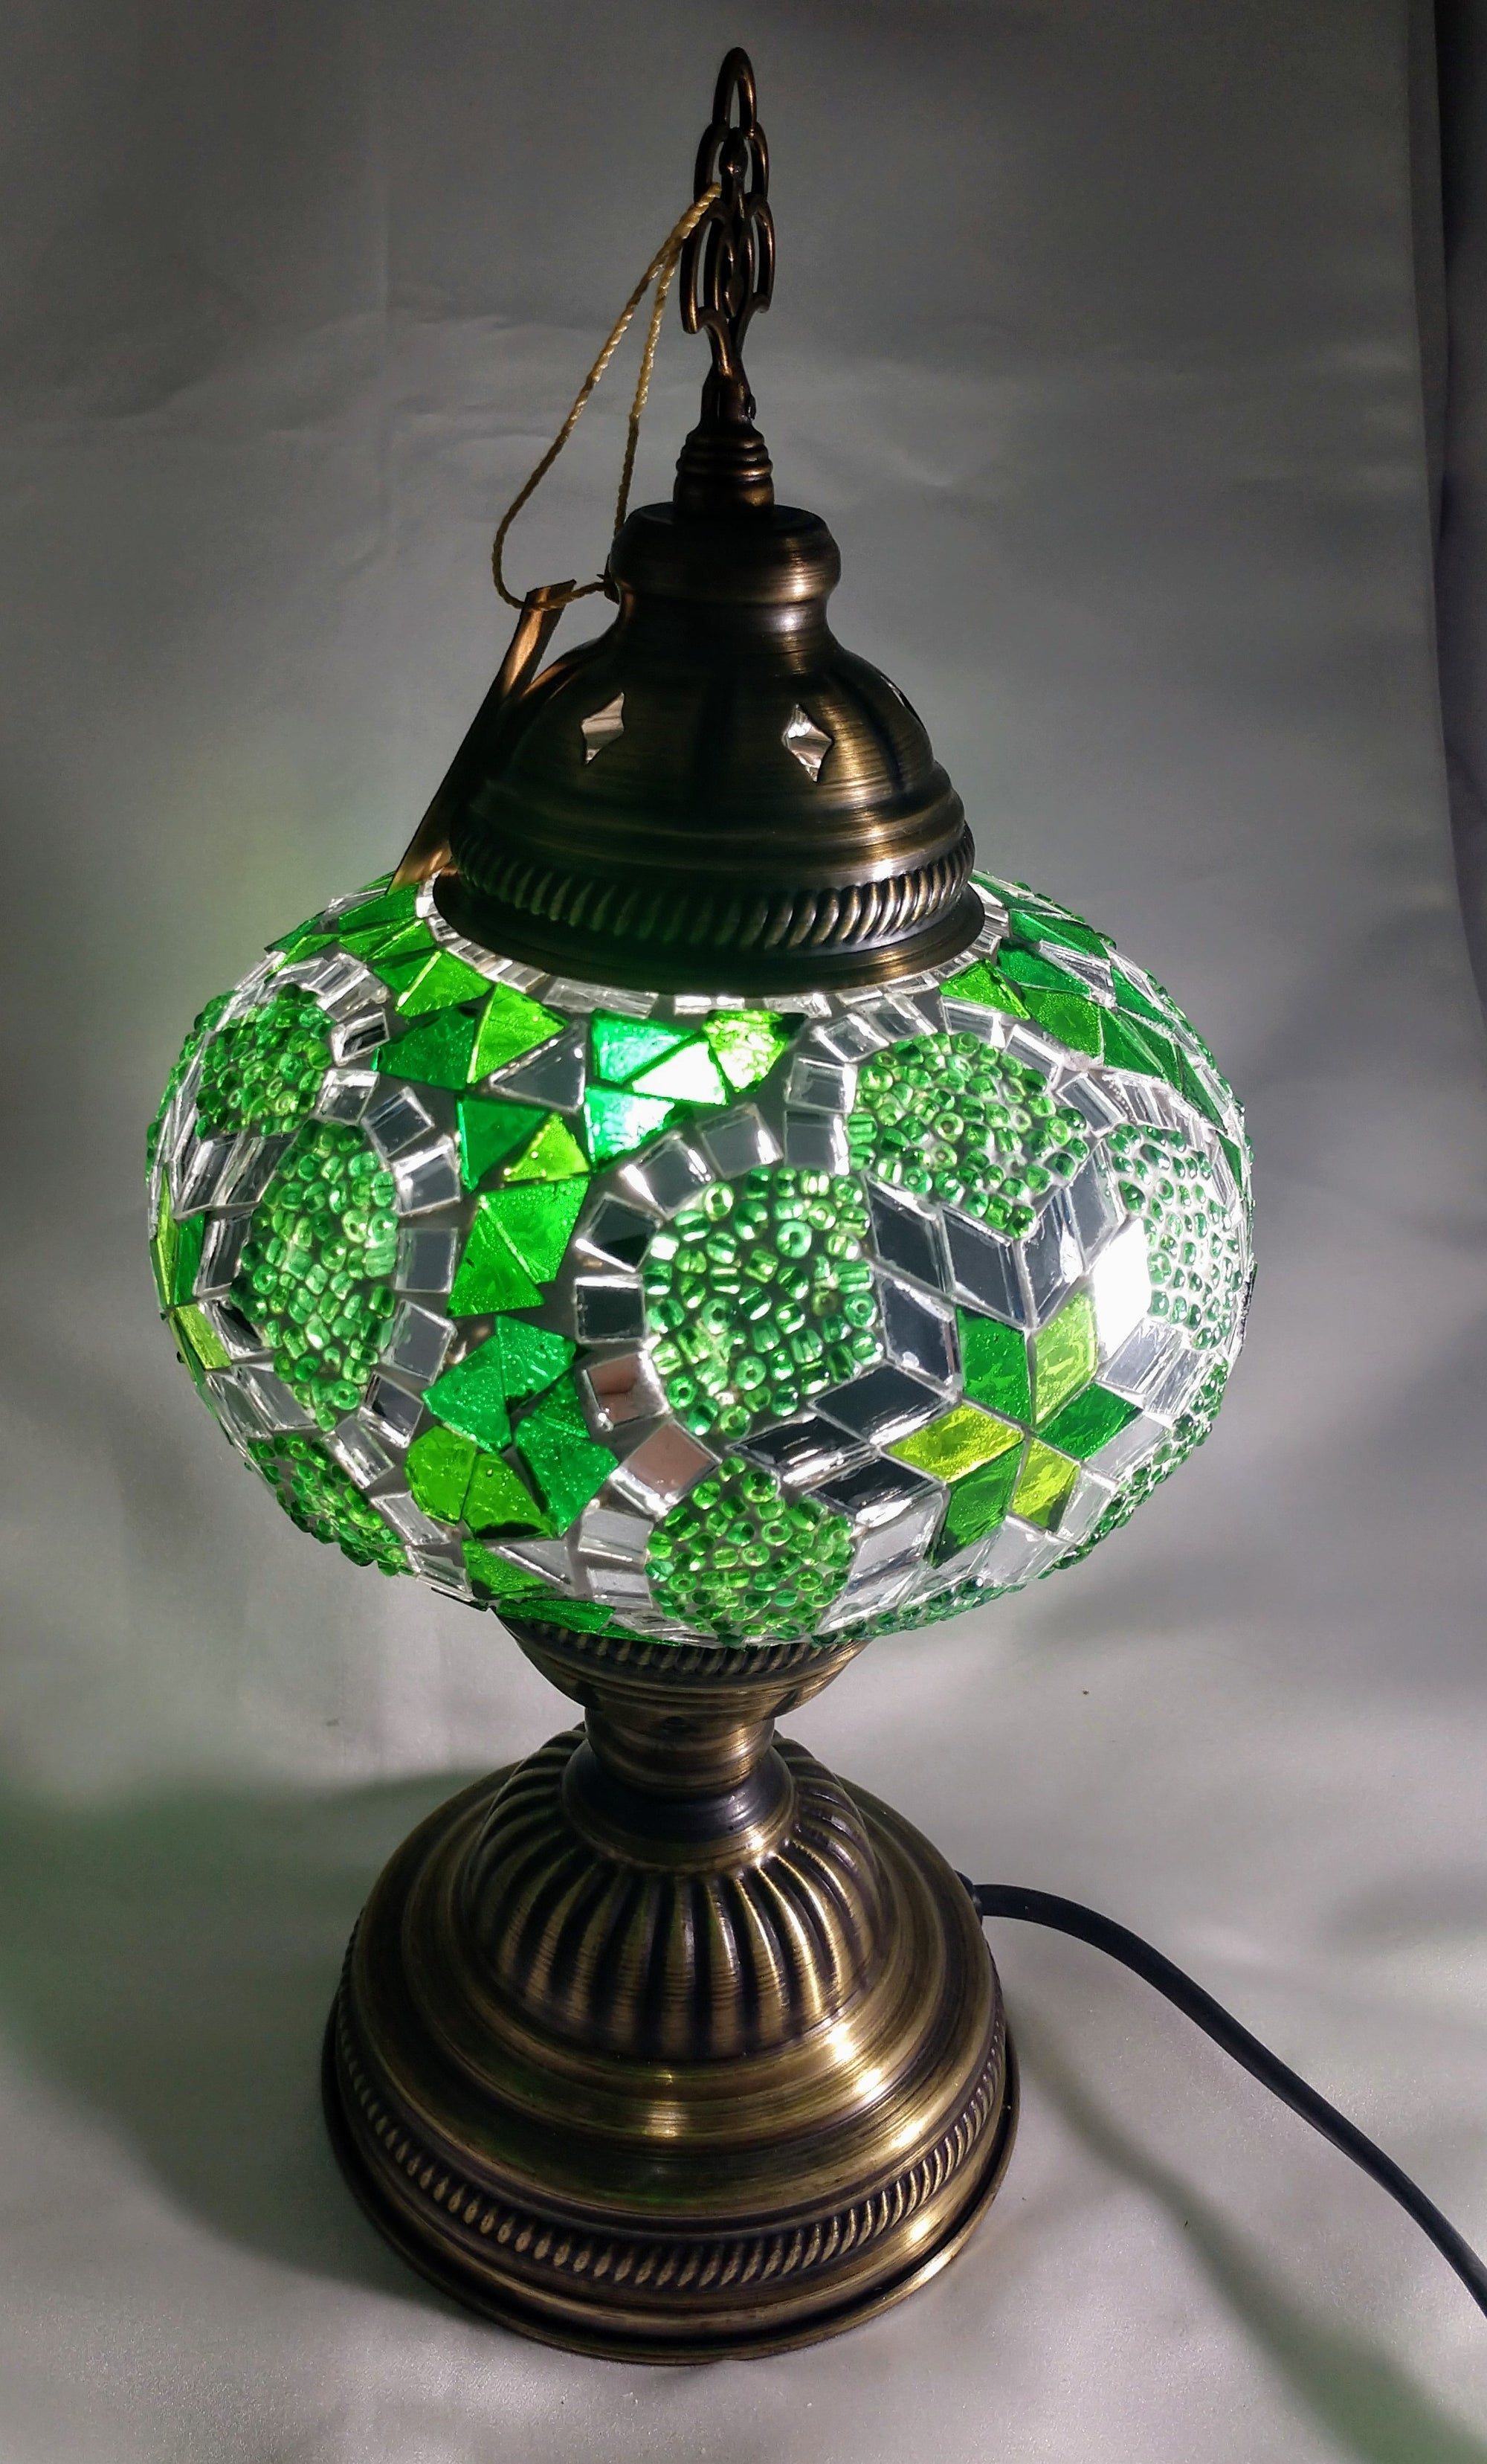 Glass Mosaic Lamp